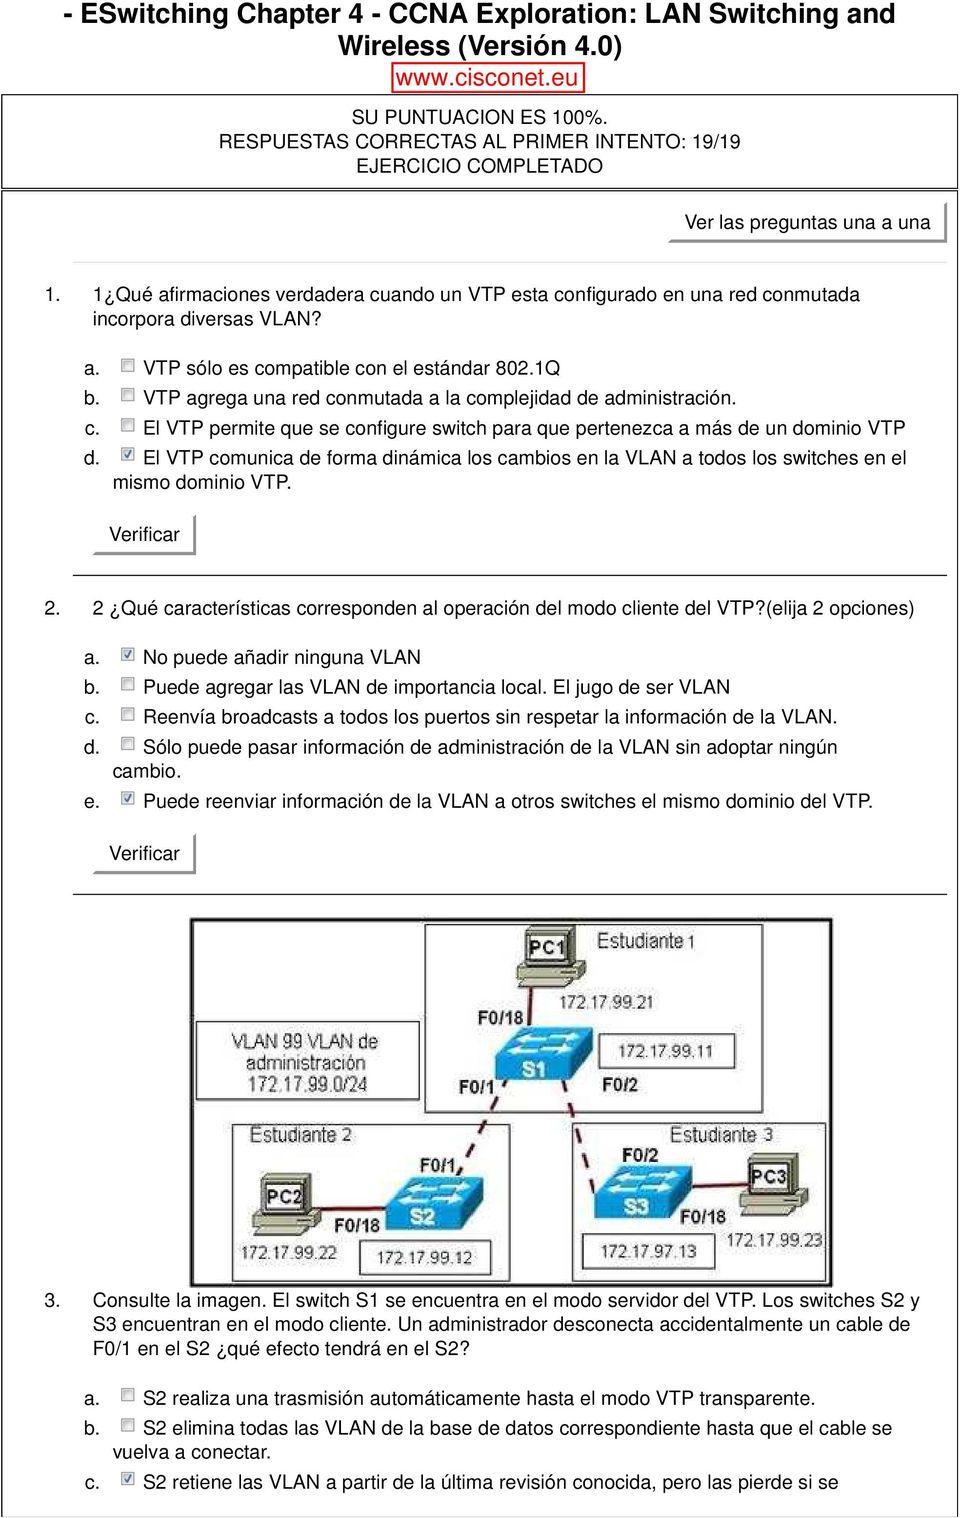 1 Qué afirmaciones verdadera cuando un VTP esta configurado en una red conmutada incorpora diversas VLAN? VTP sólo es compatible con el estándar 802.